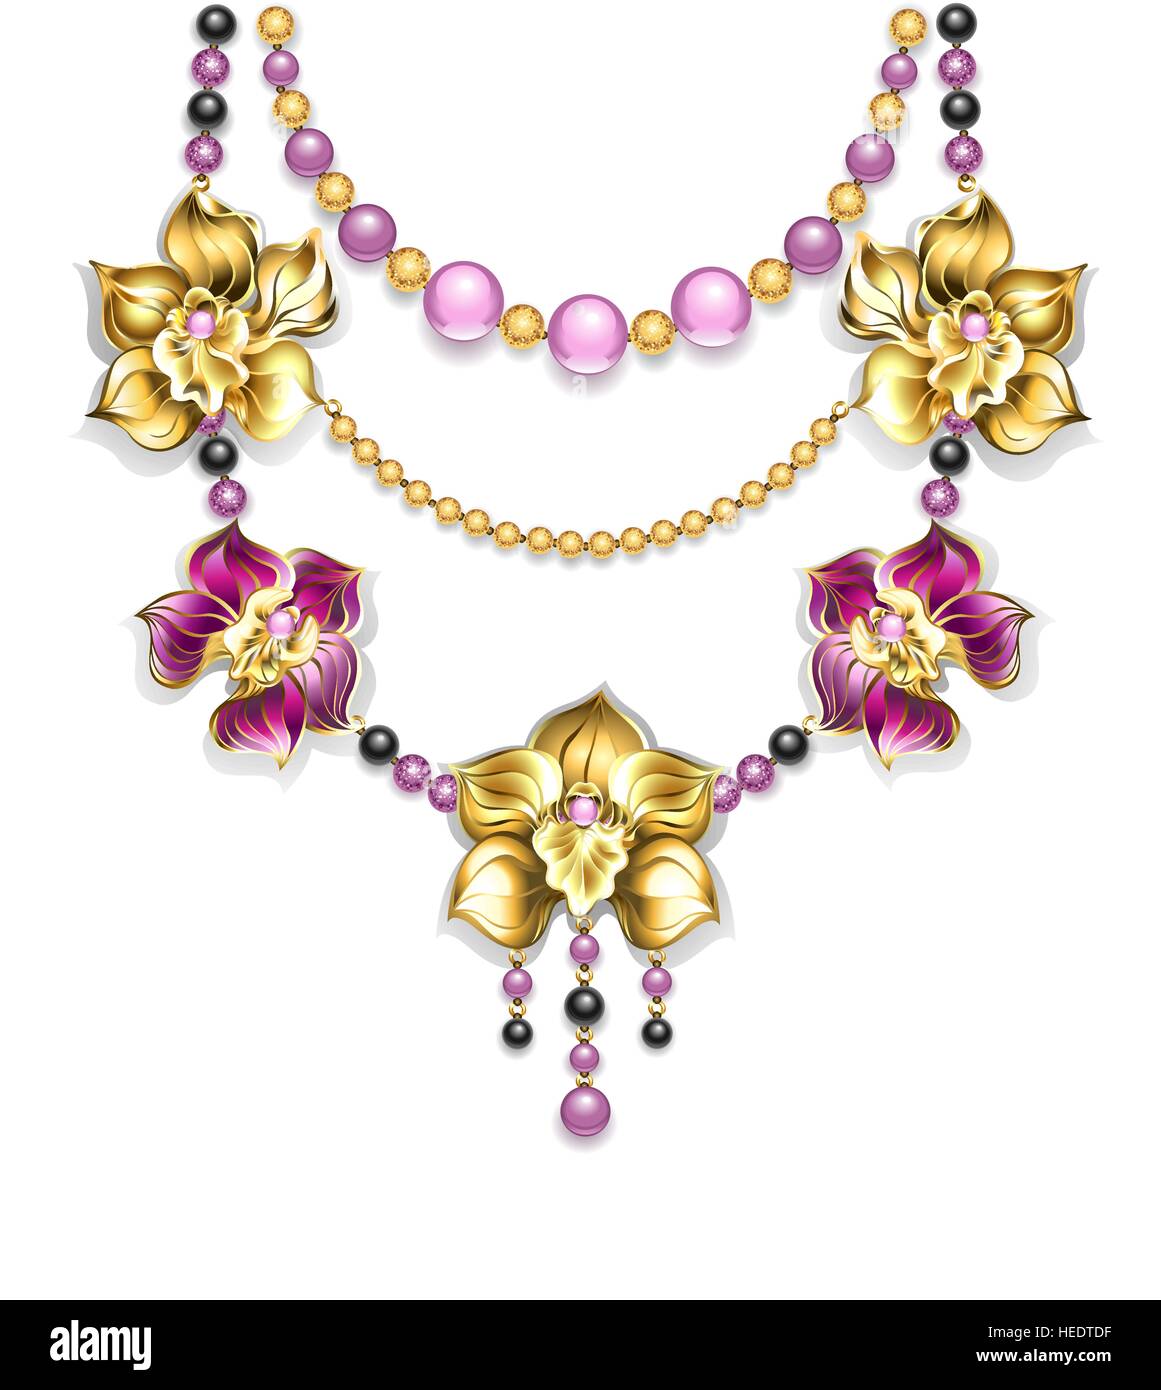 Collier de rose, l'or, perles noires et or orchidées sur un fond clair. Design bijoux. Orchidée Dorée. Couleur tendance Illustration de Vecteur